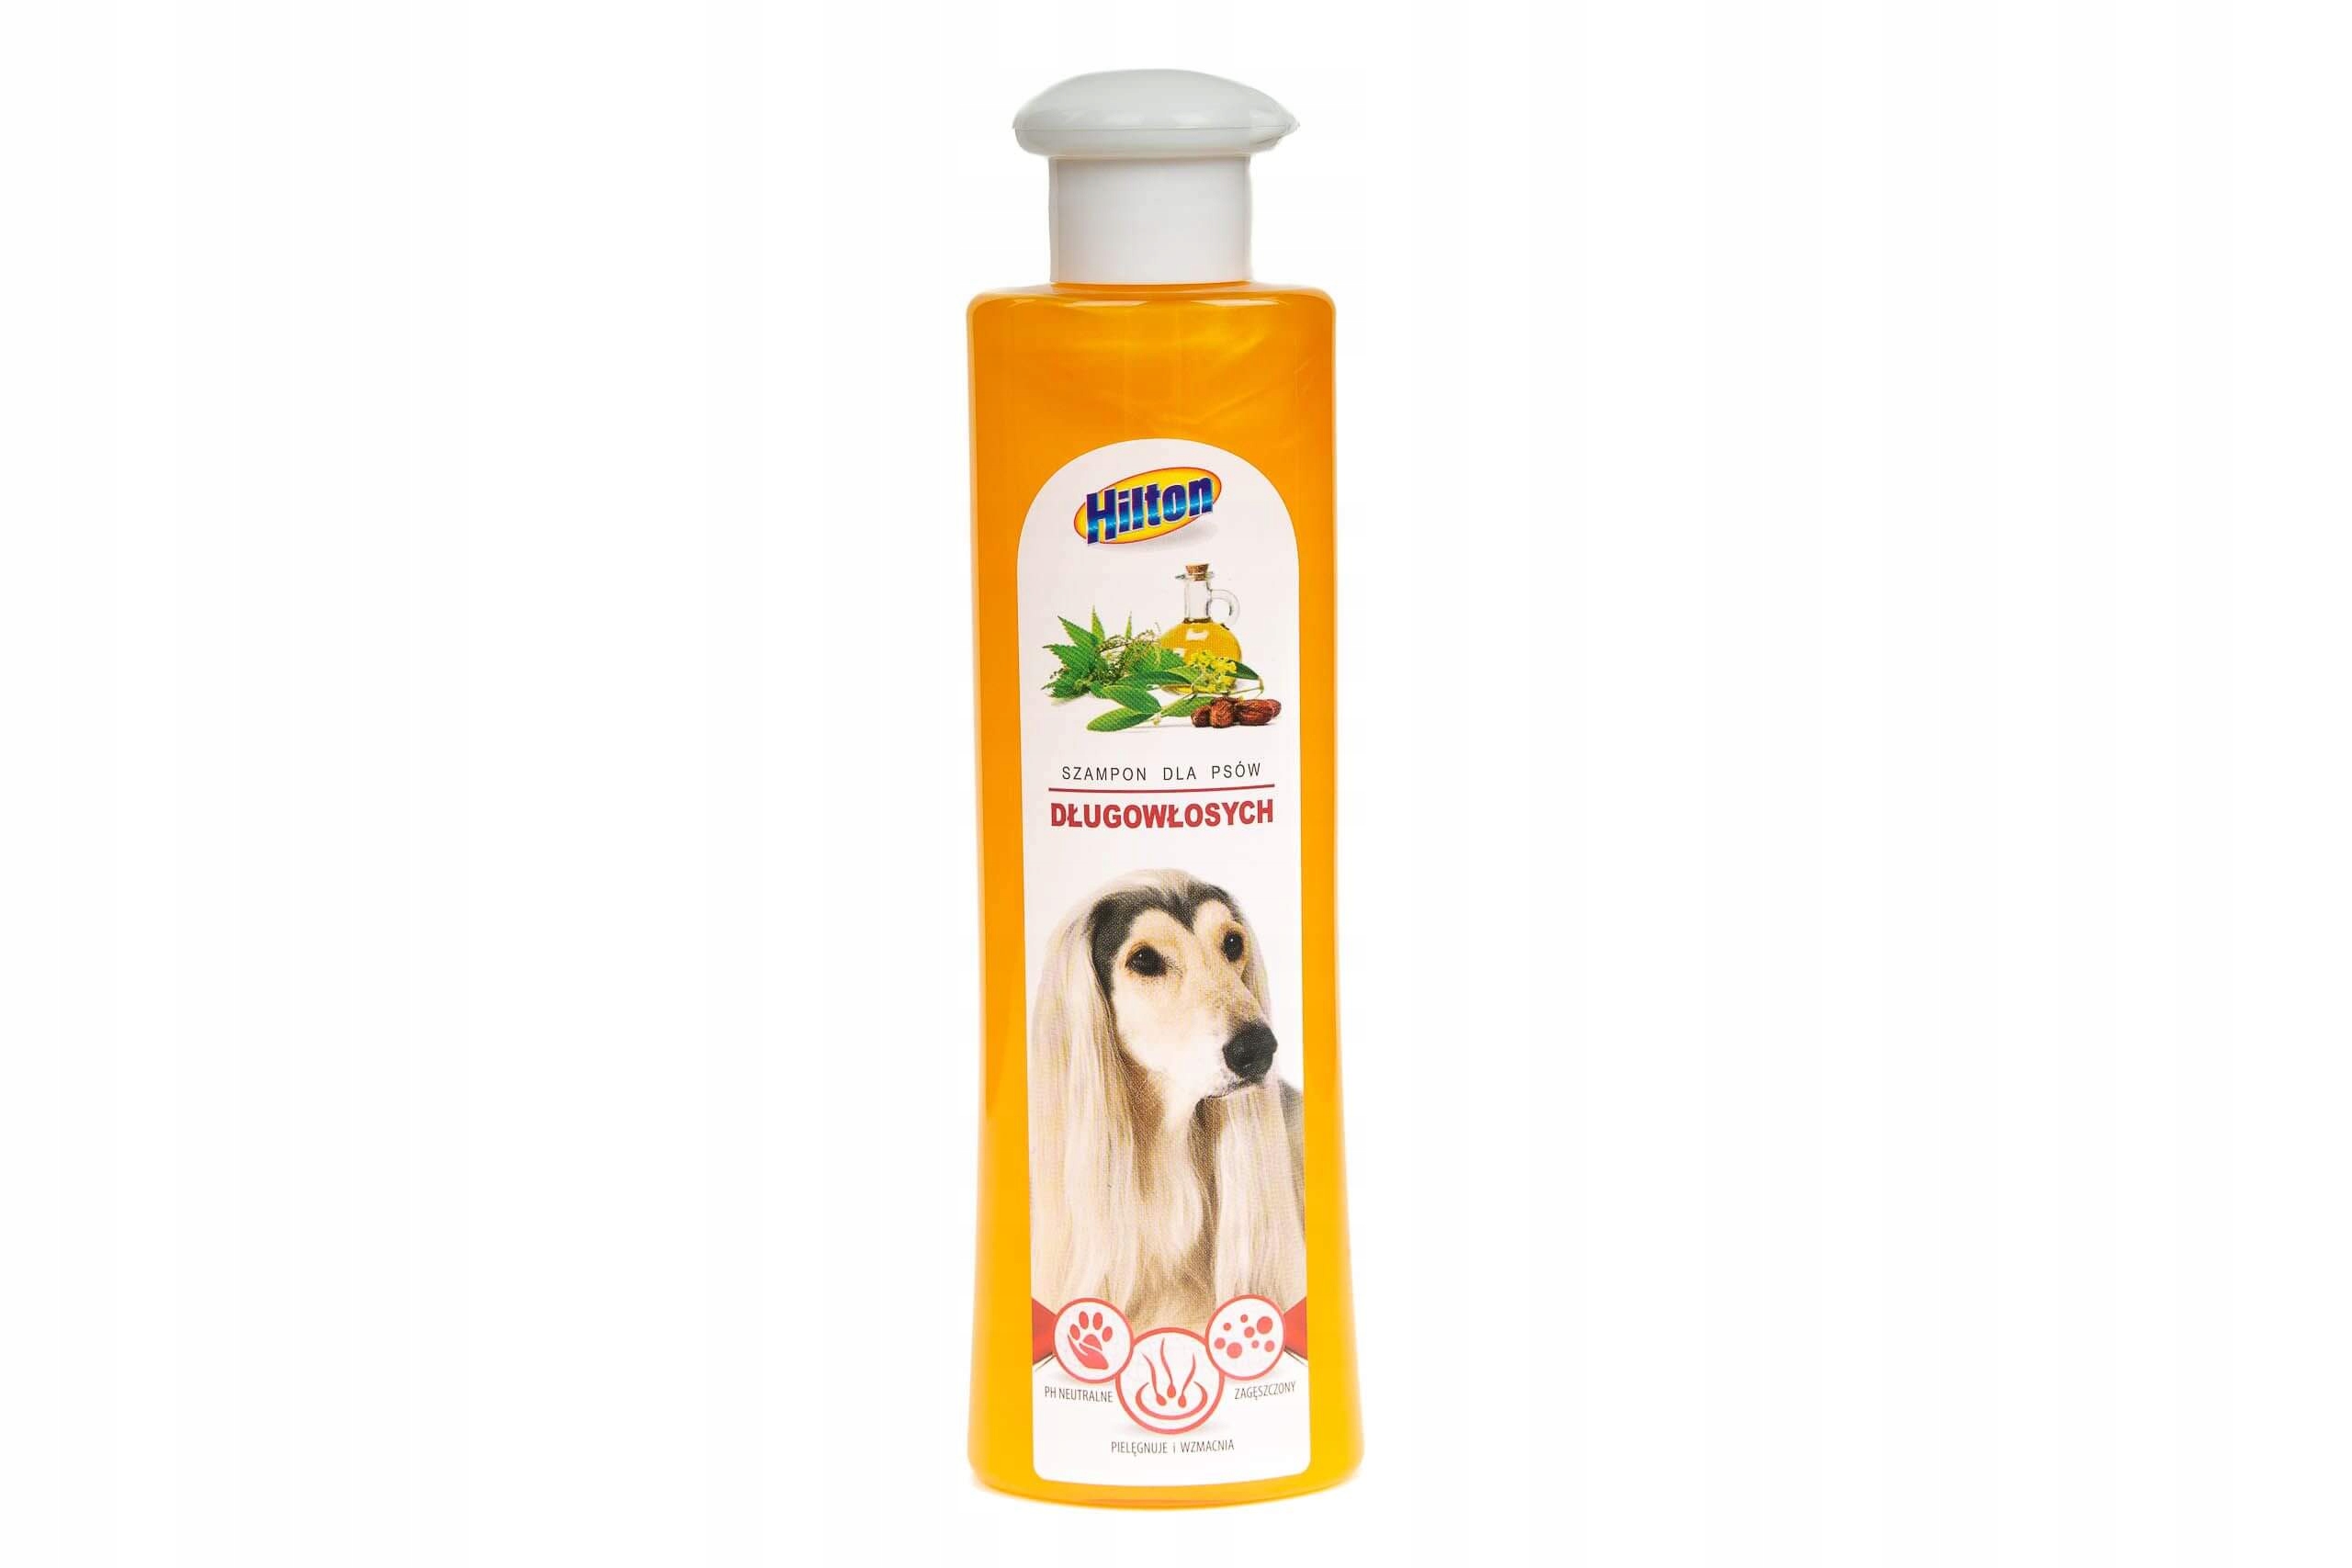 szampon dla psow hilton